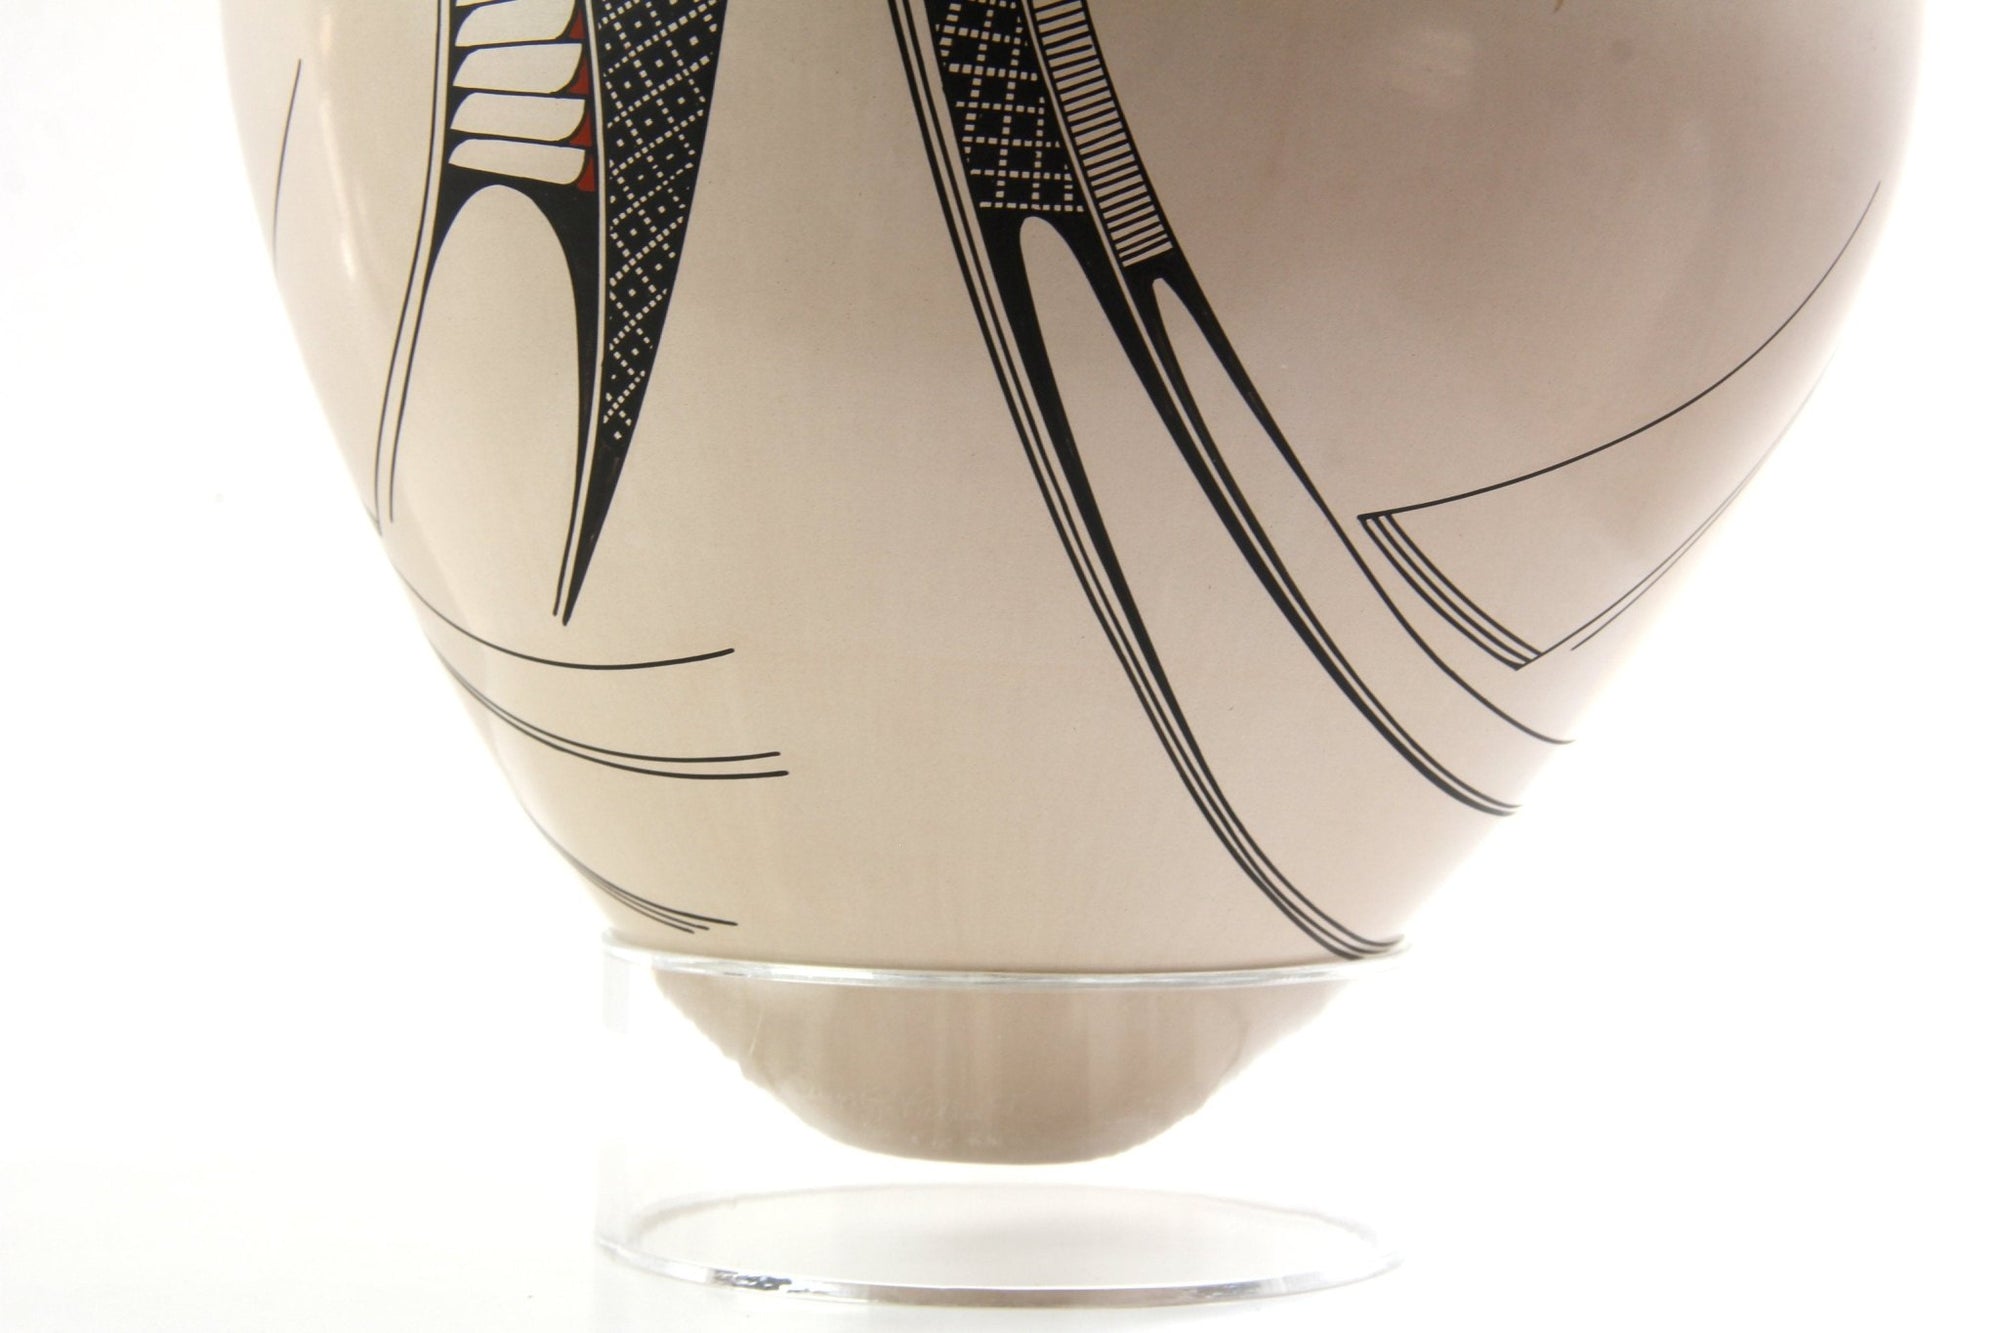 Keramik von Mata Ortiz - Keramik von Diego Valles I - Huichol-Kunst - Marakame